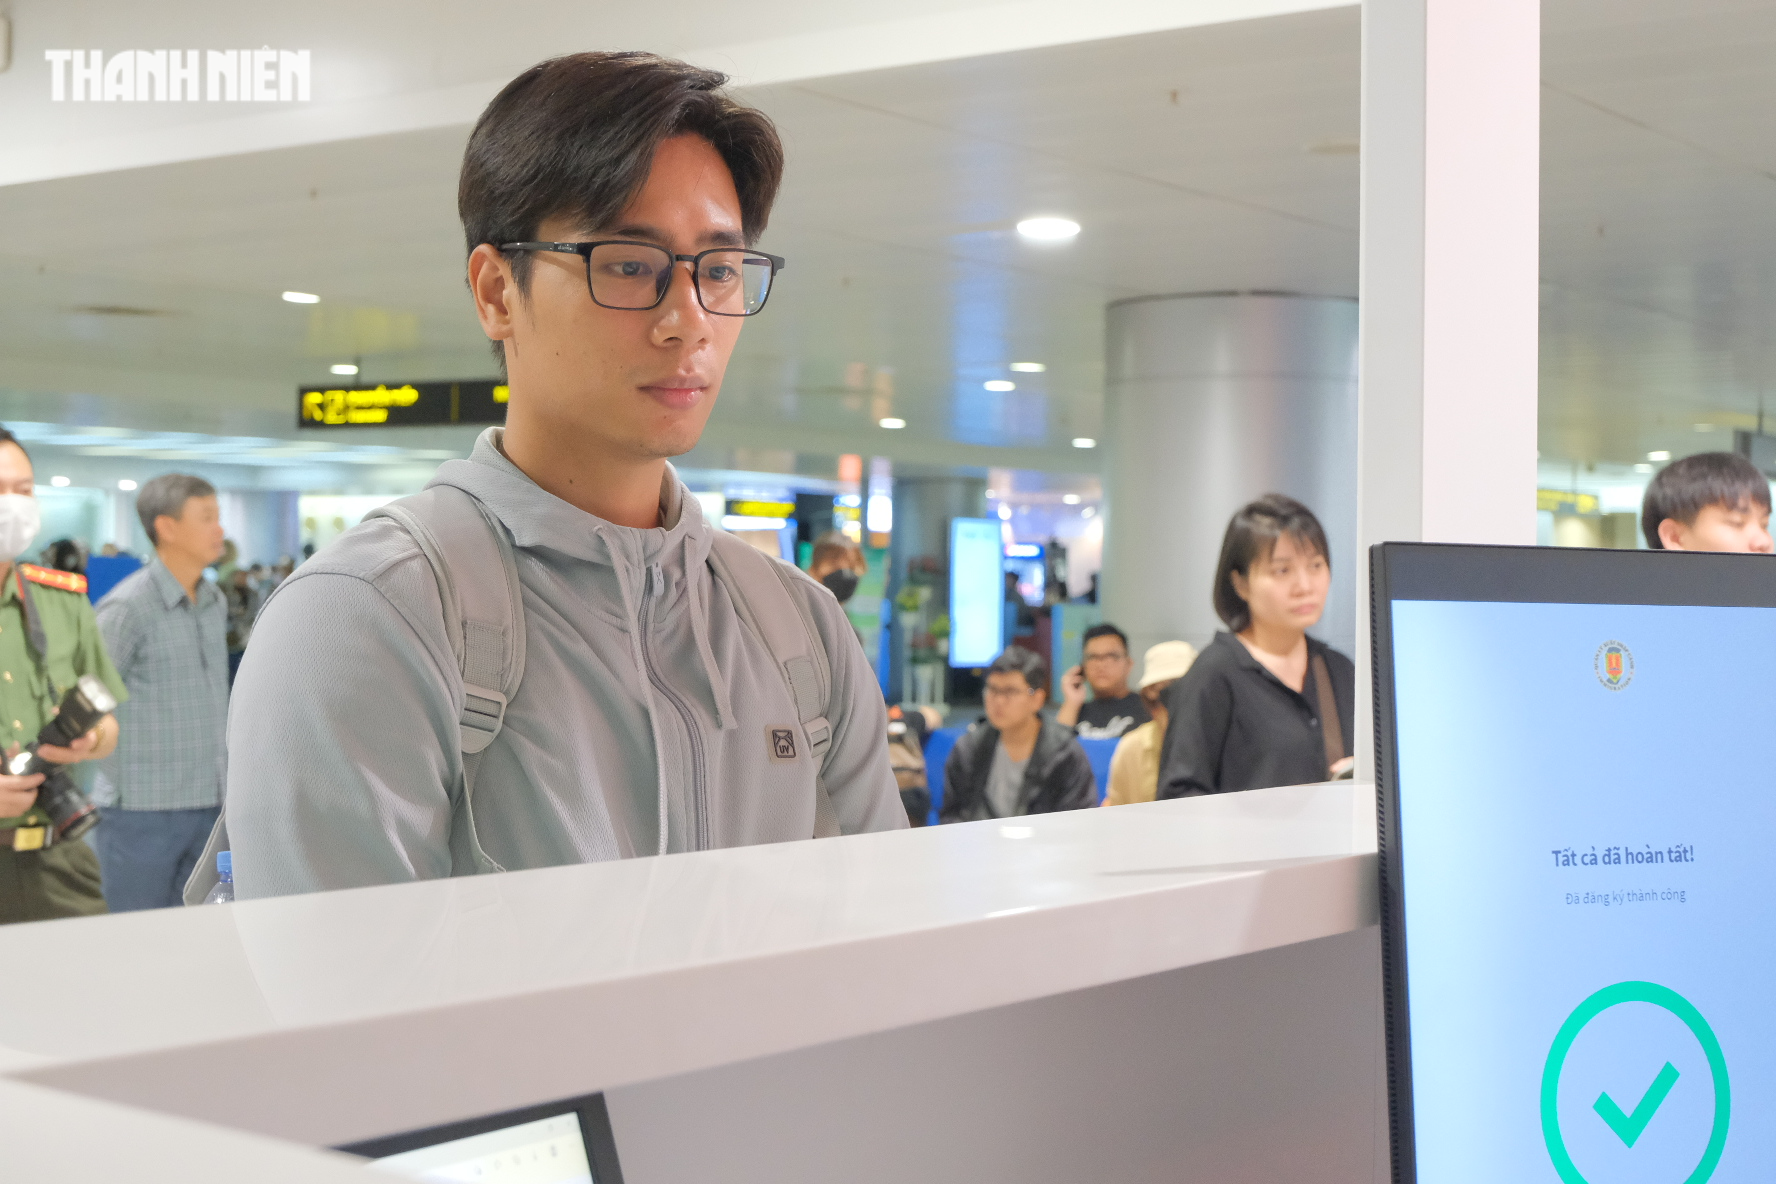 Tân Sơn Nhất chính thức thử nghiệm scan passport cho người Việt, nhập cảnh chỉ 30 giây - Ảnh 2.